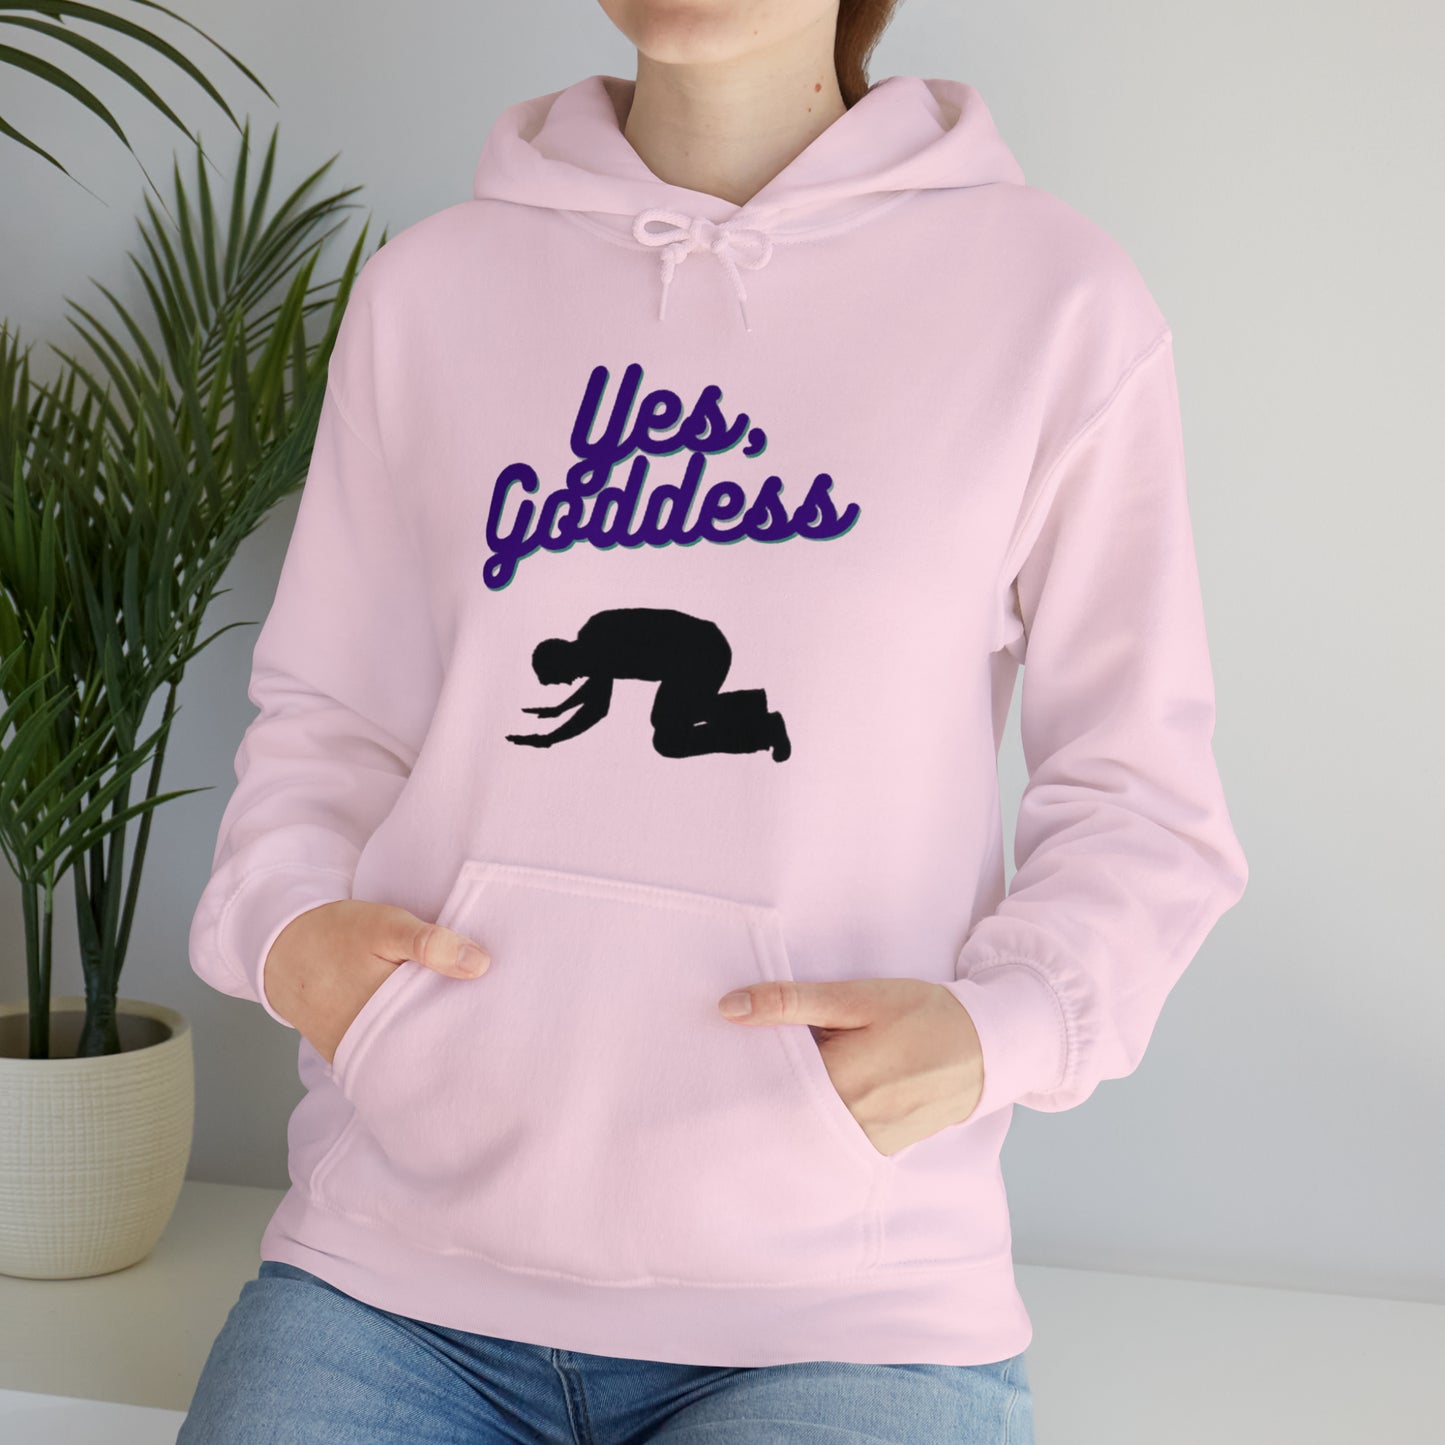 Yes, Goddess Unisex Hooded Sweatshirt